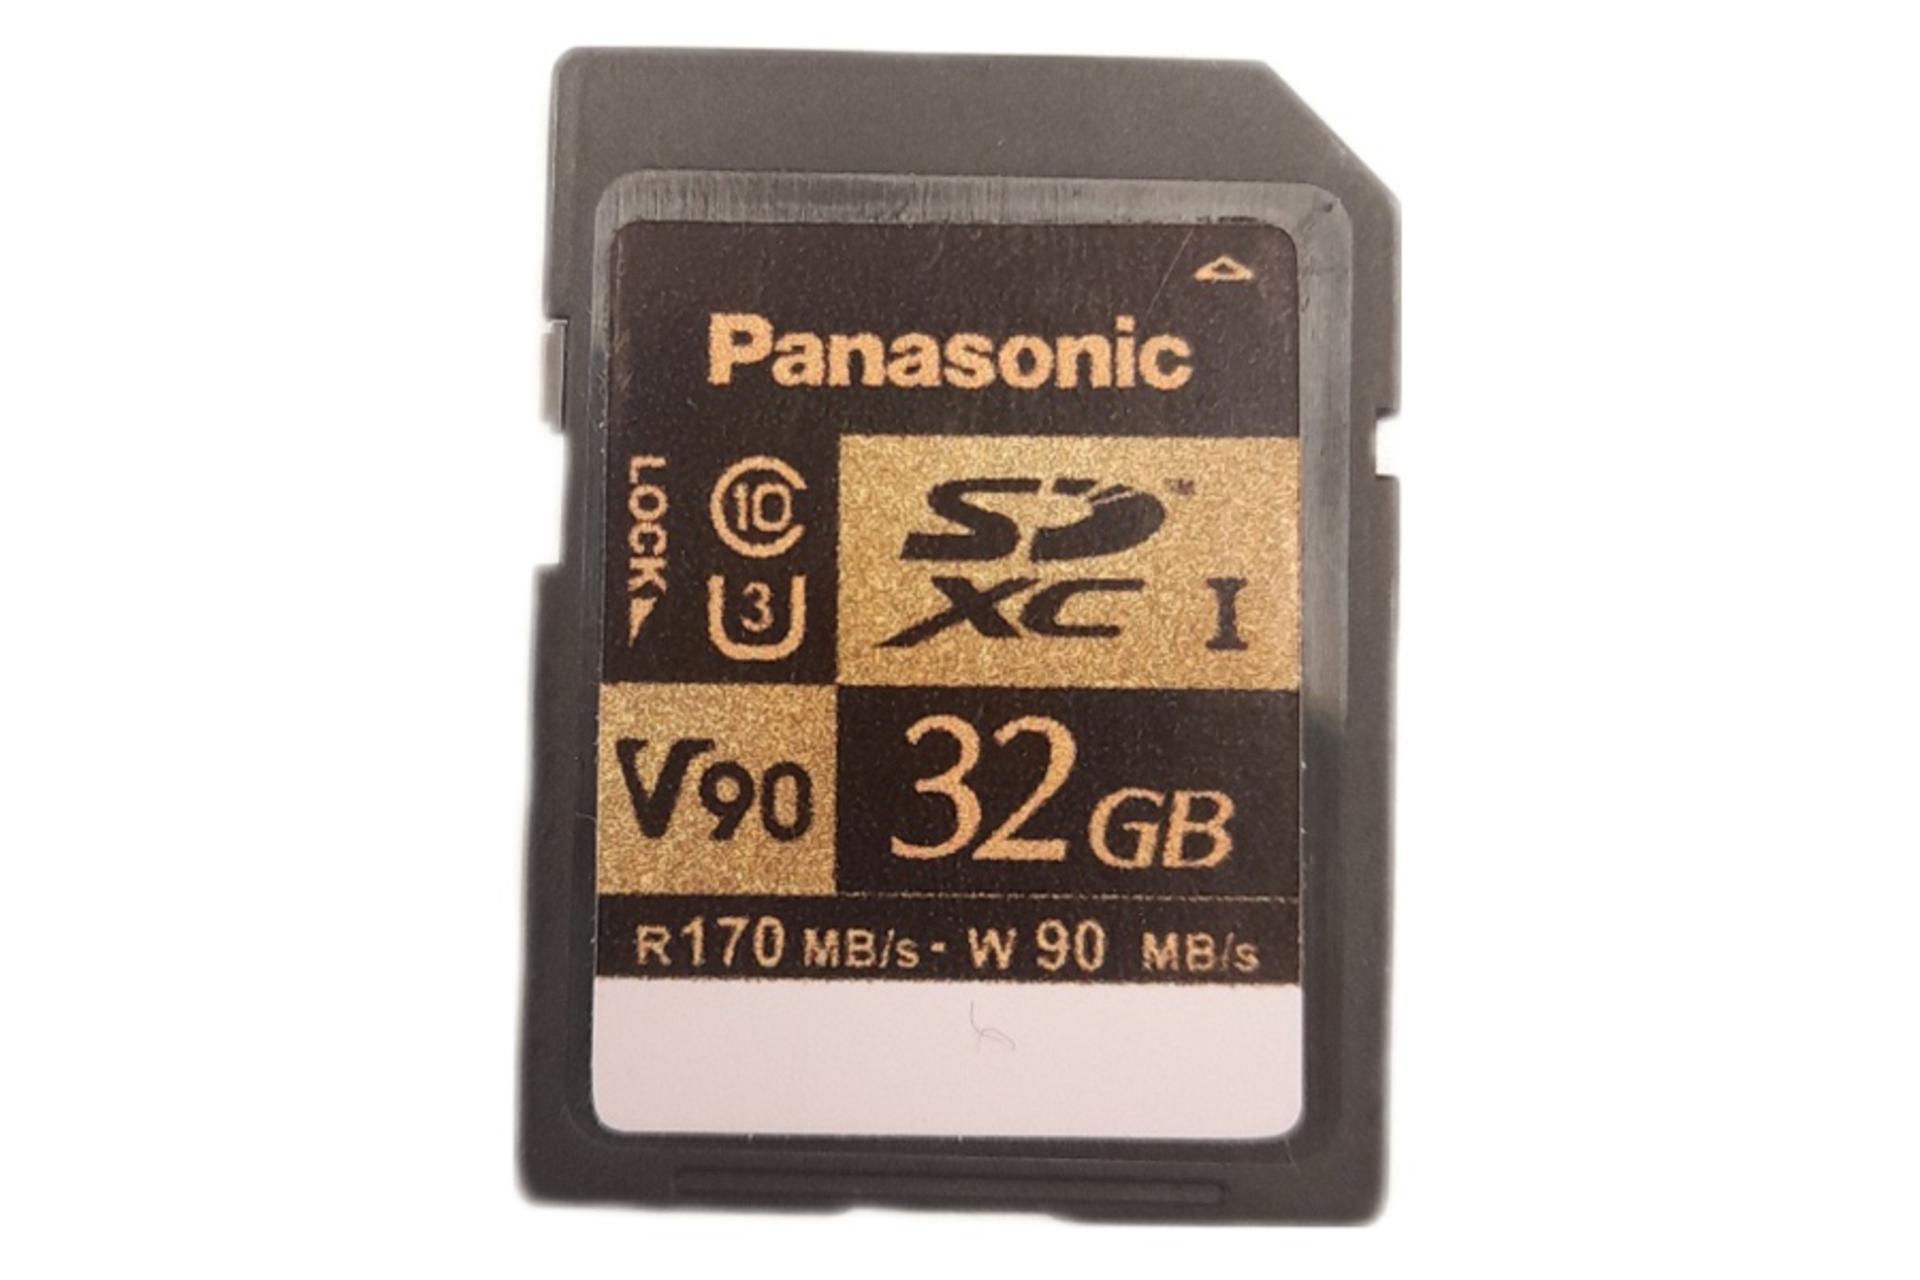 پاناسونیک microSDHC با ظرفیت 32 گیگابایت مدل RP-SDZA32G V90 کلاس 10